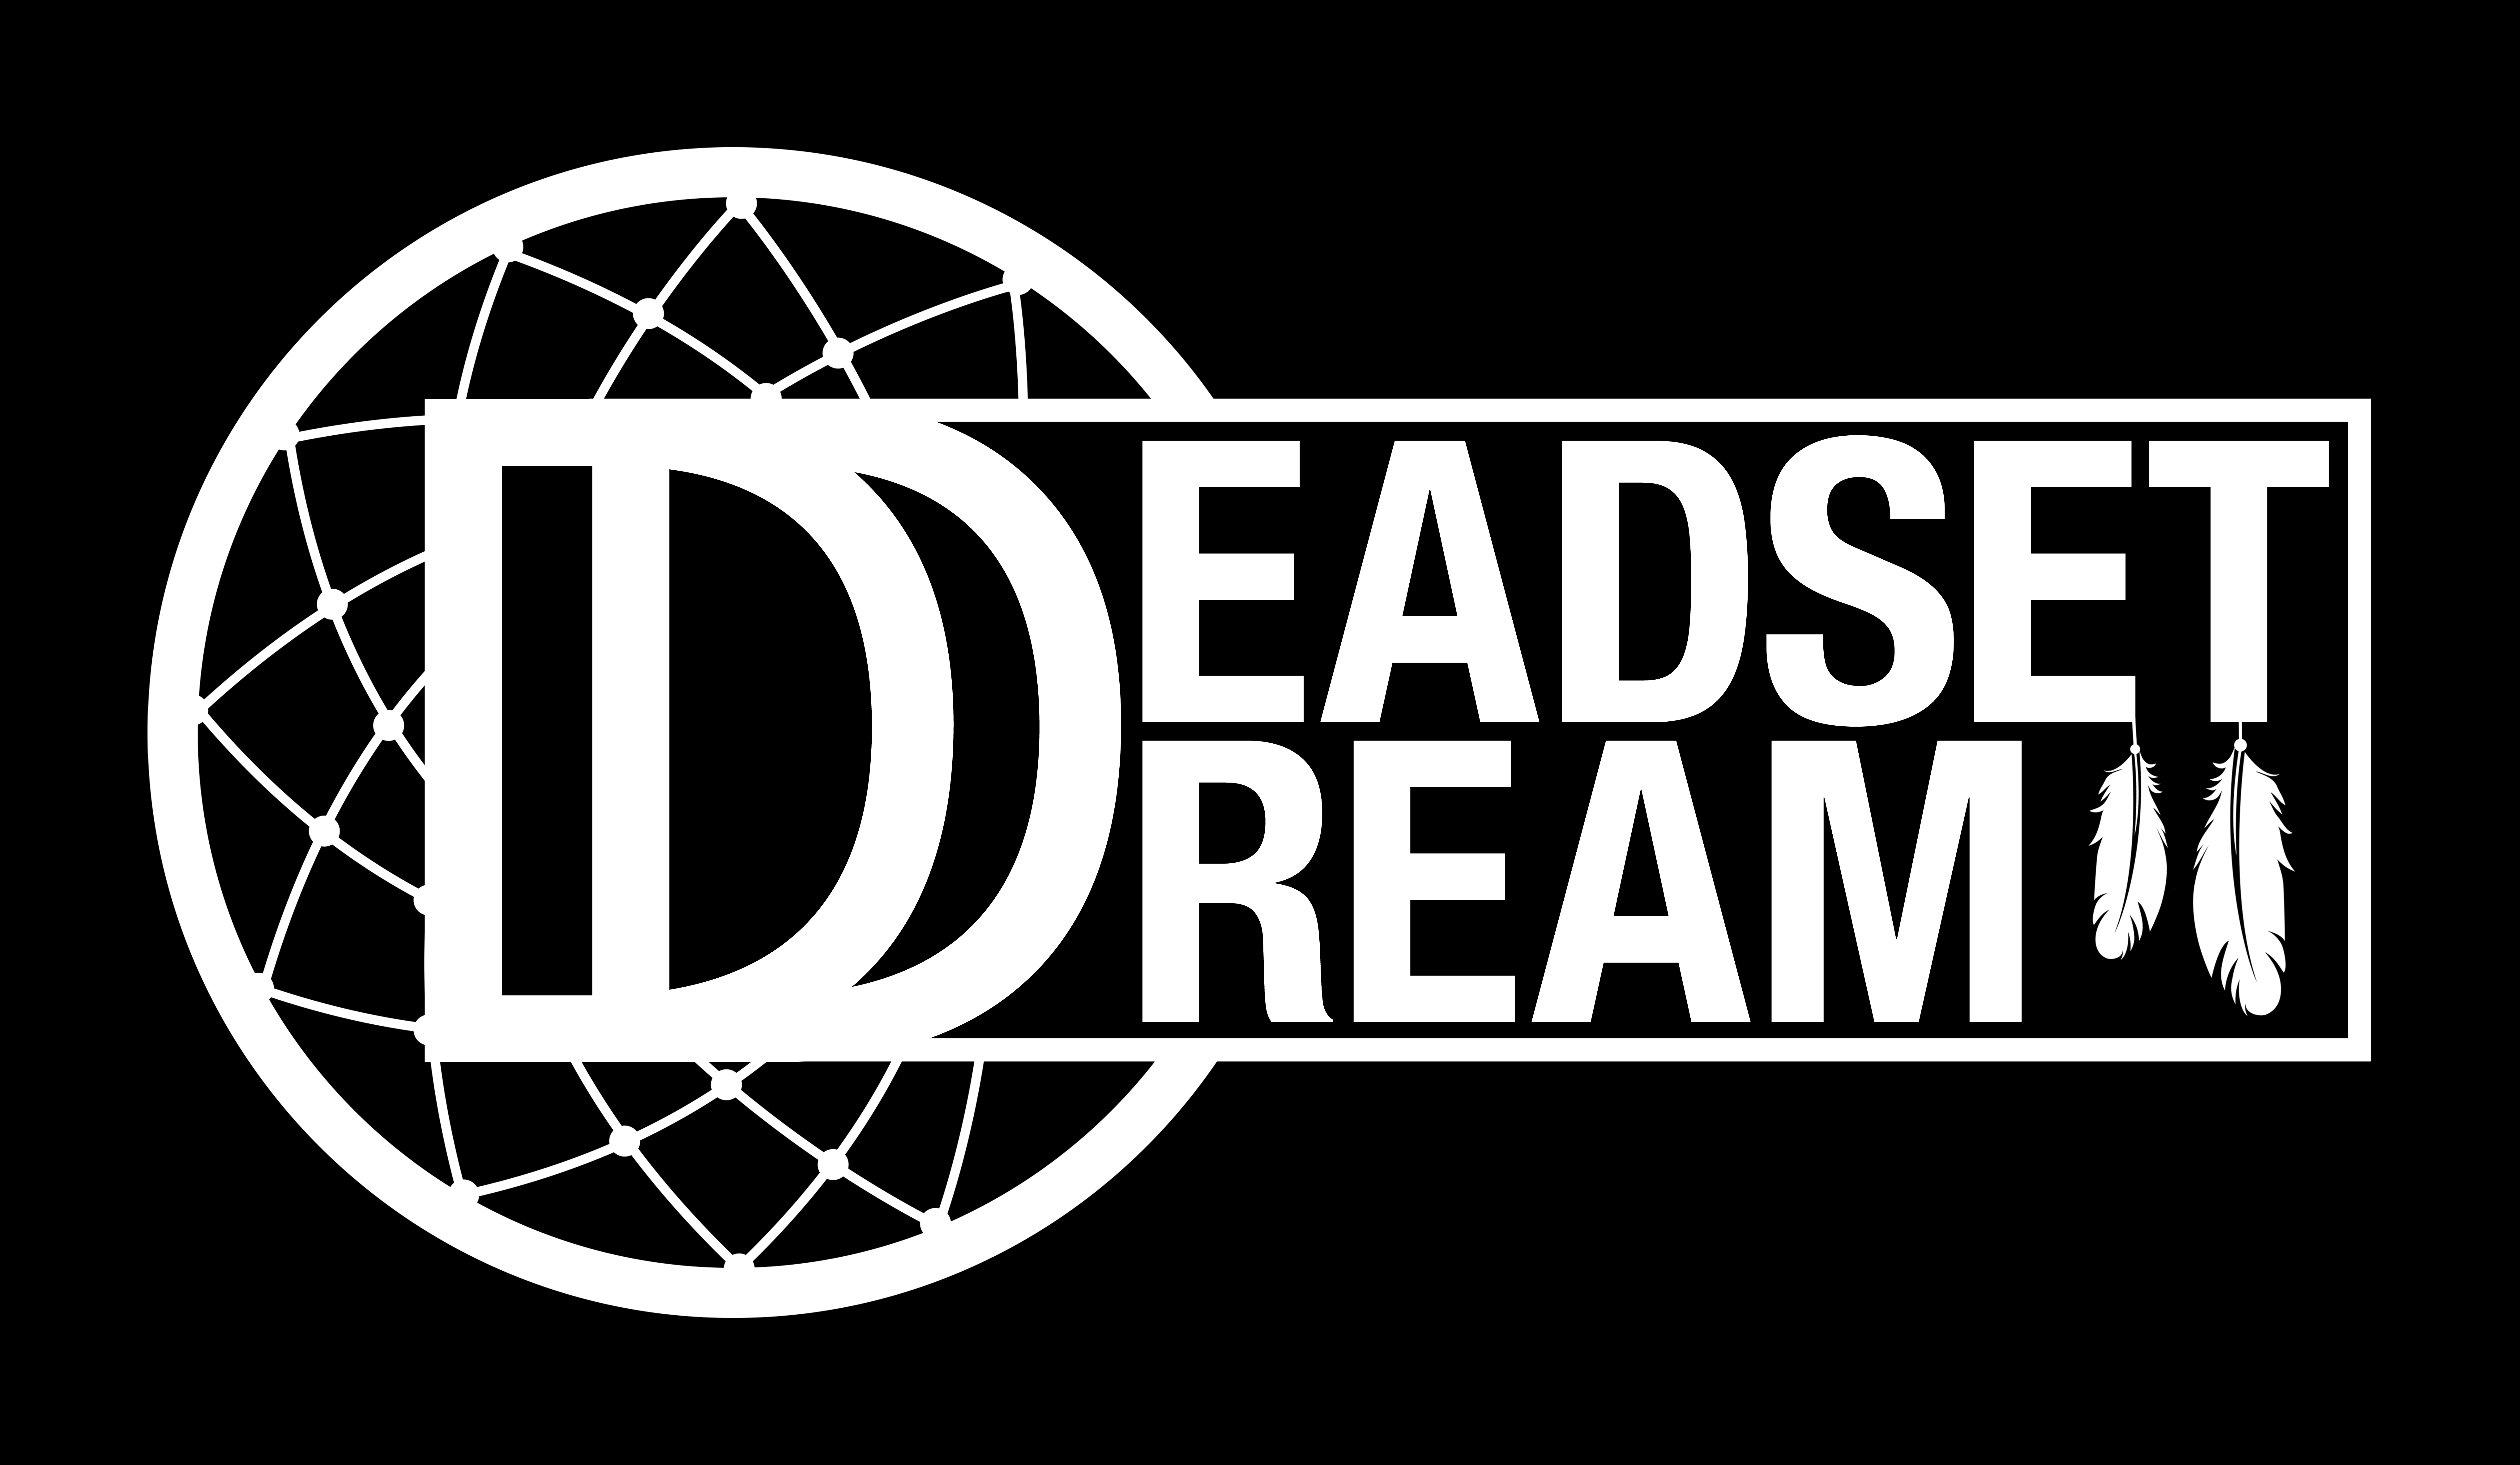 Blah! - Deadset Dream